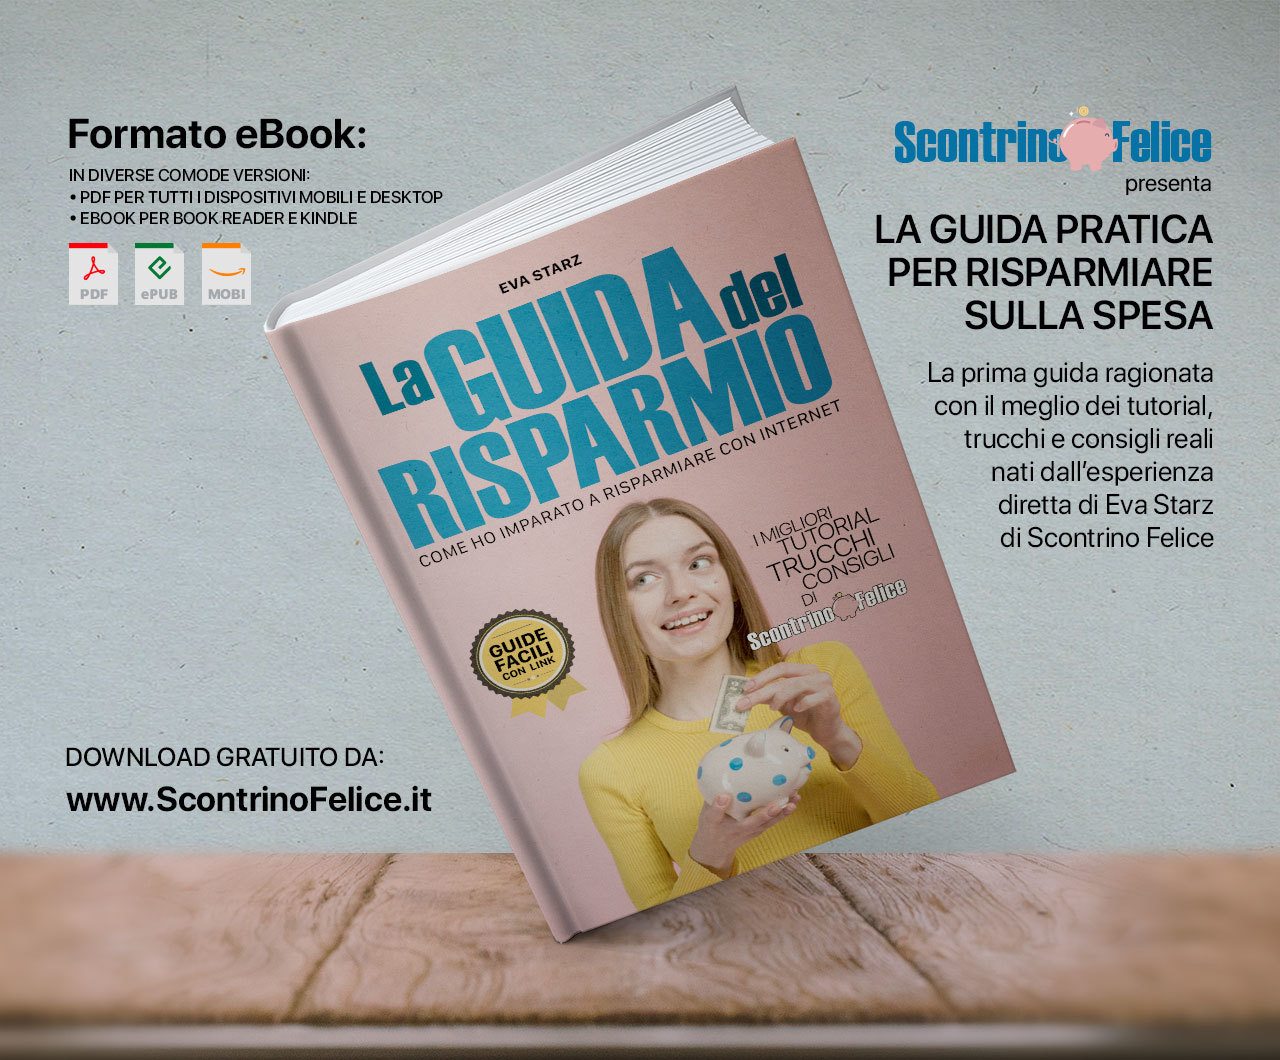 La Guida del Risparmio” di Eva Starz in formato eBook gratuito - Italiamac  News